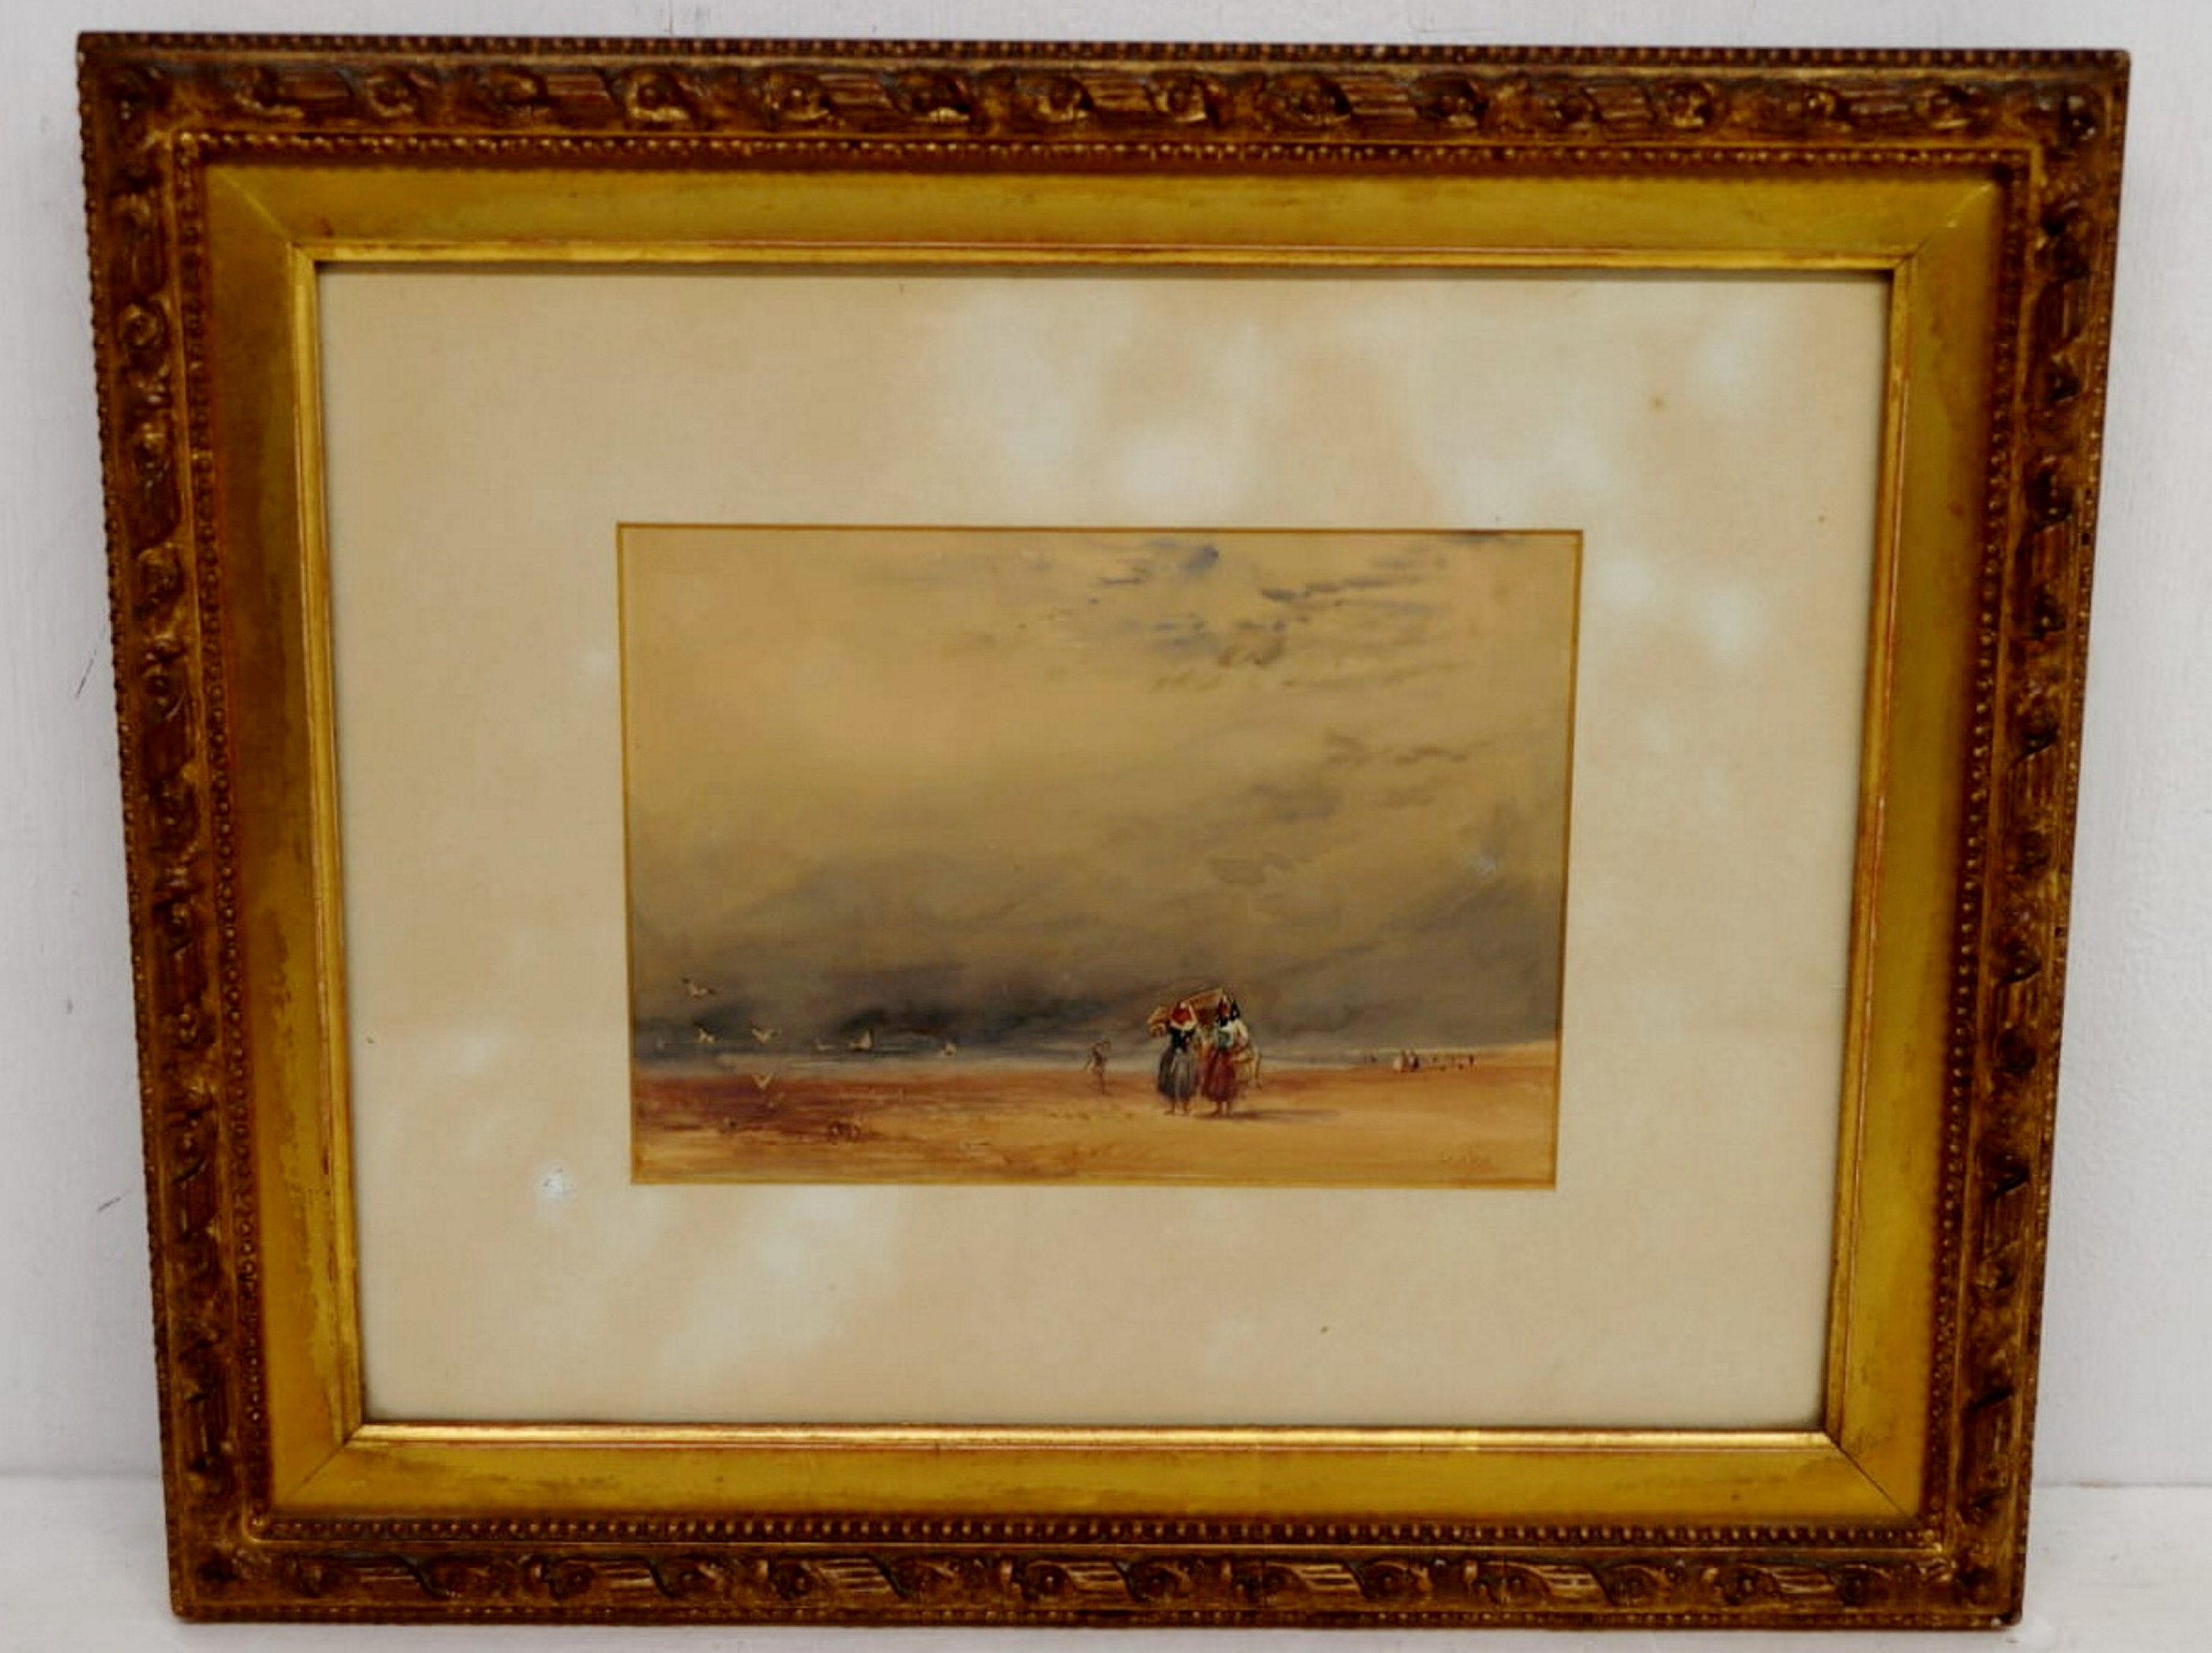 Das Gemälde wurde an einen anonymen britischen Bieter verkauft